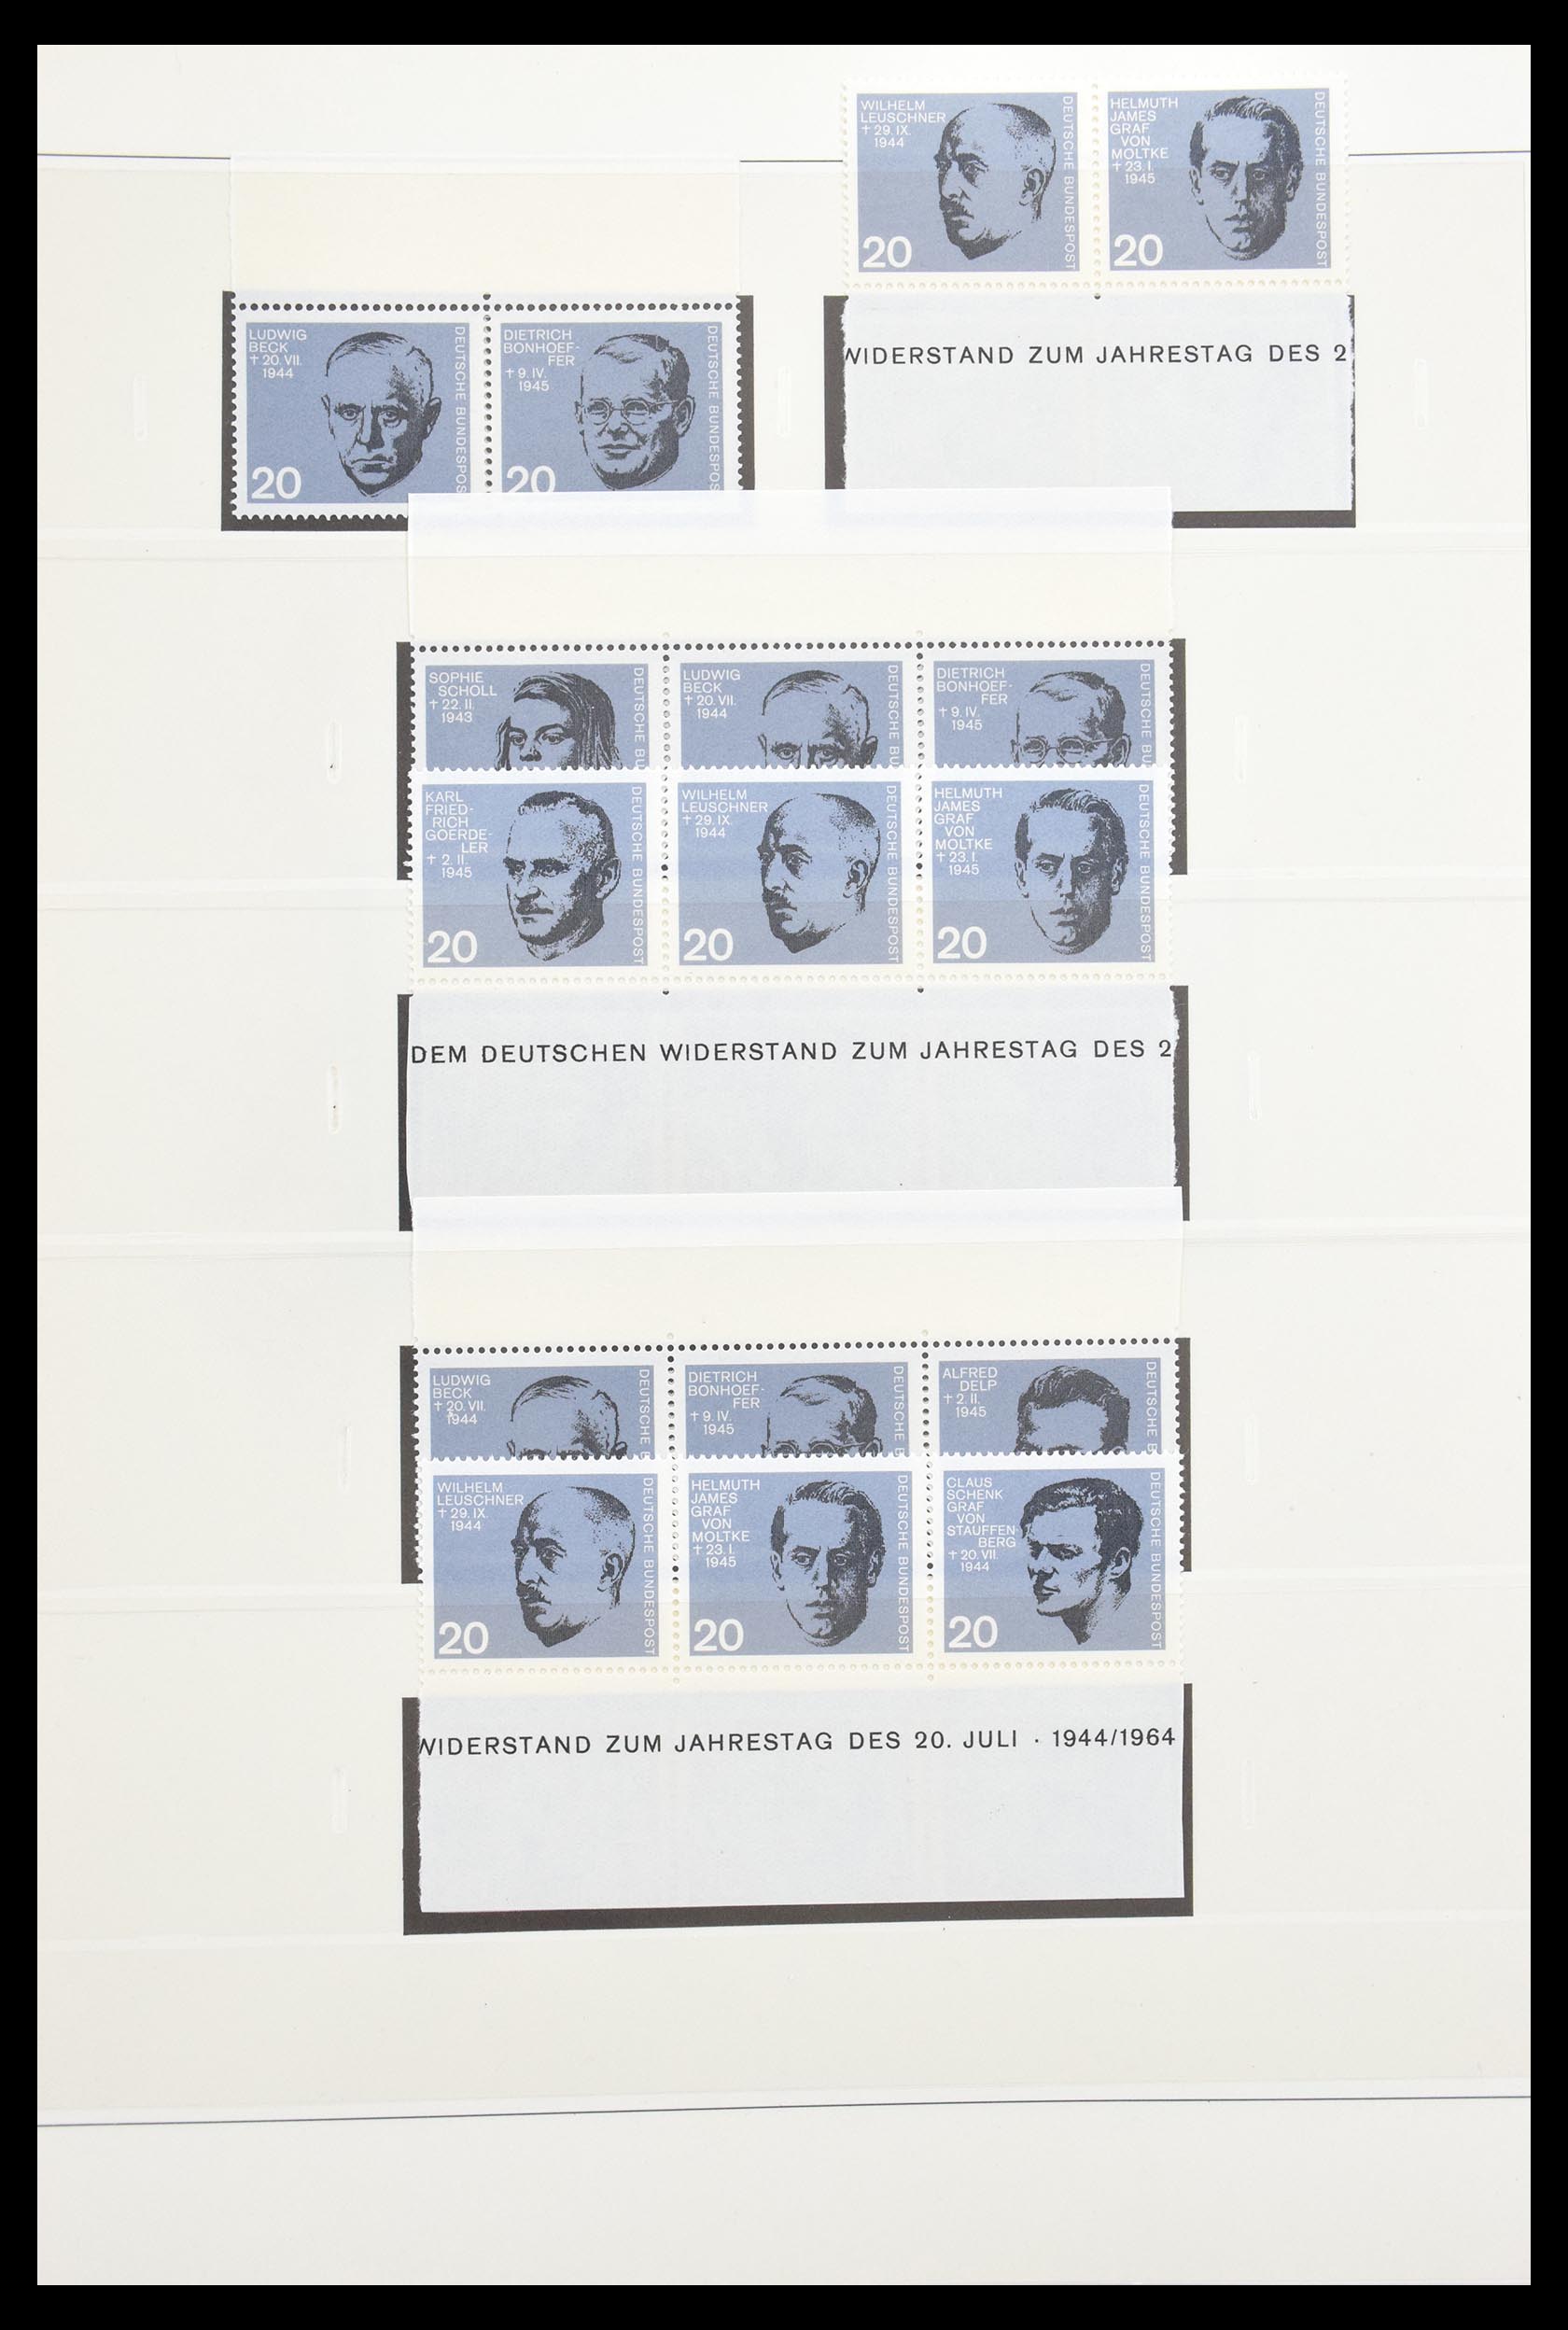 30605 021 - 30605 Bundespost combinaties 1951-1974.